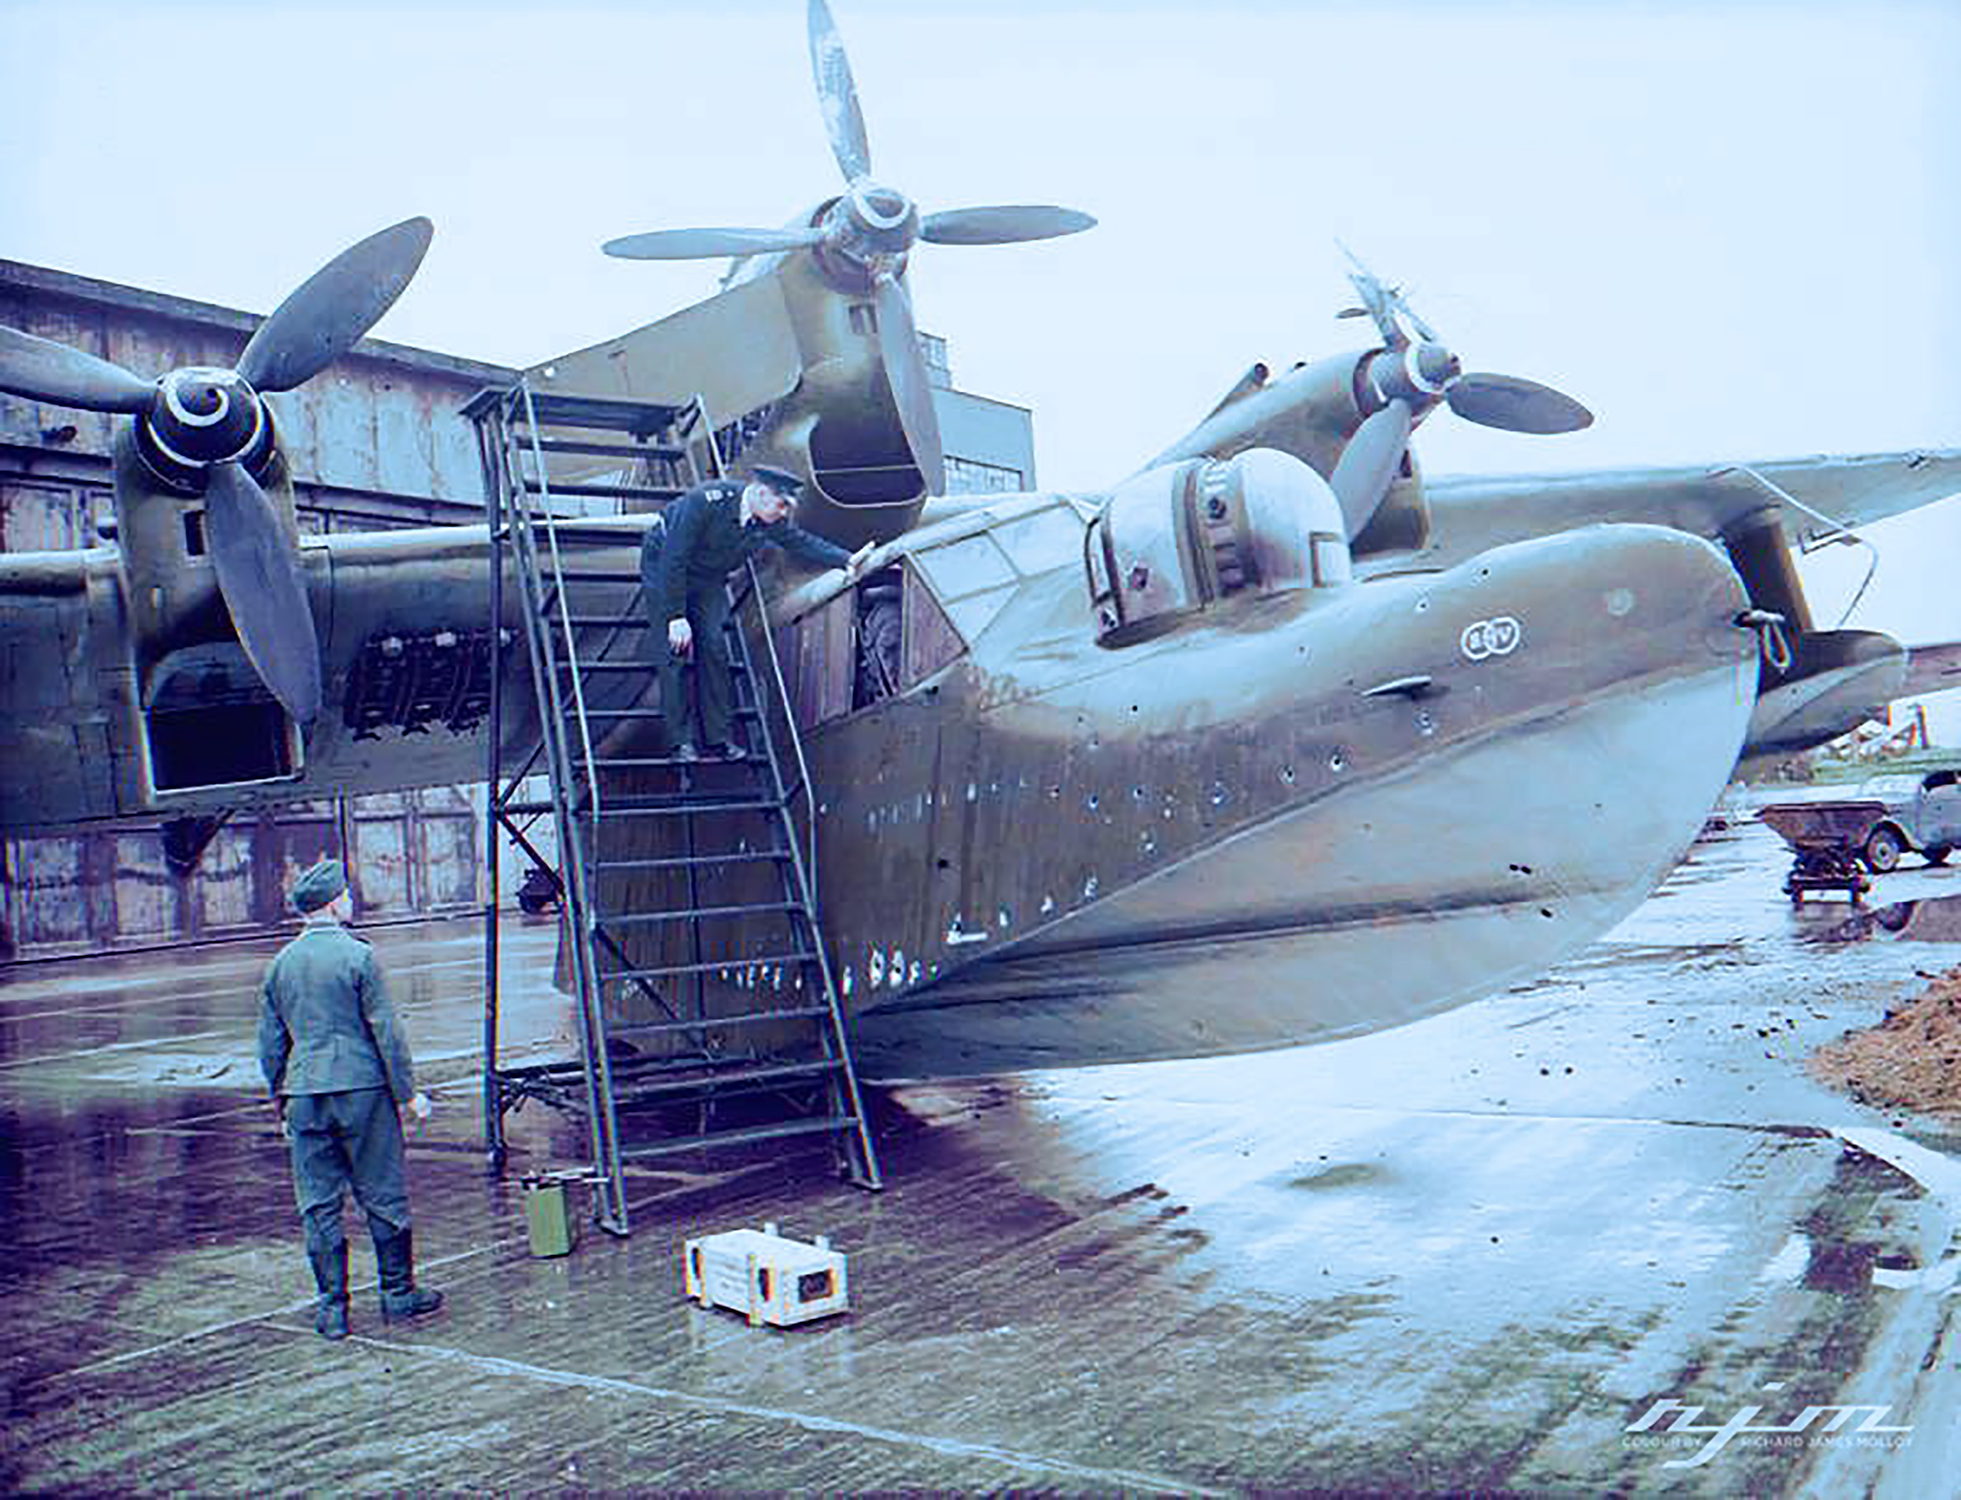 blog389-34_bv-138b-seaplane-captured-at-kiel-may-1945-01.jpg